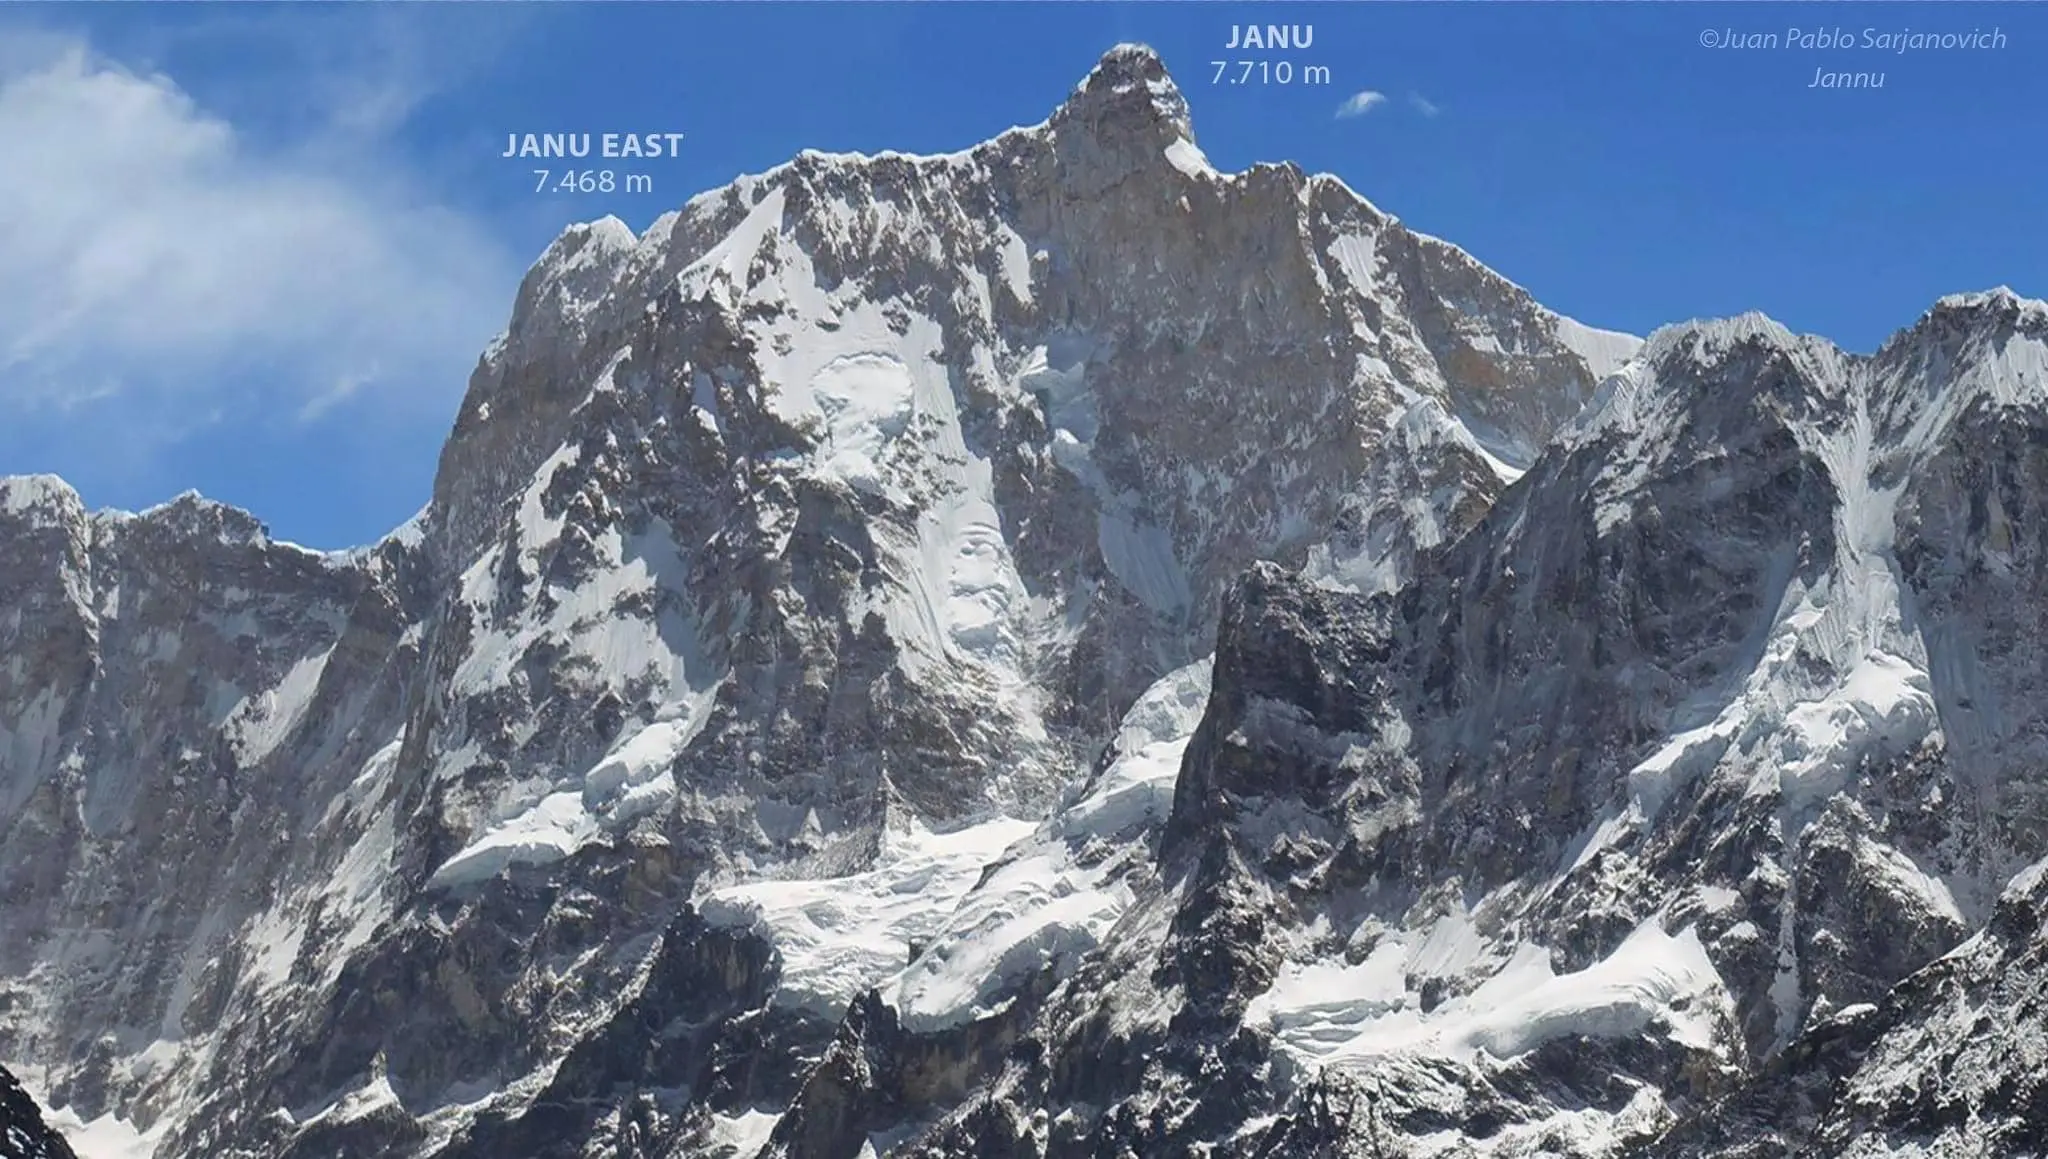 Жанну Східна (Jannu East) висотою 7468 метрів та Жанну (7710м). Фото Juan Pablo Sarjanovich